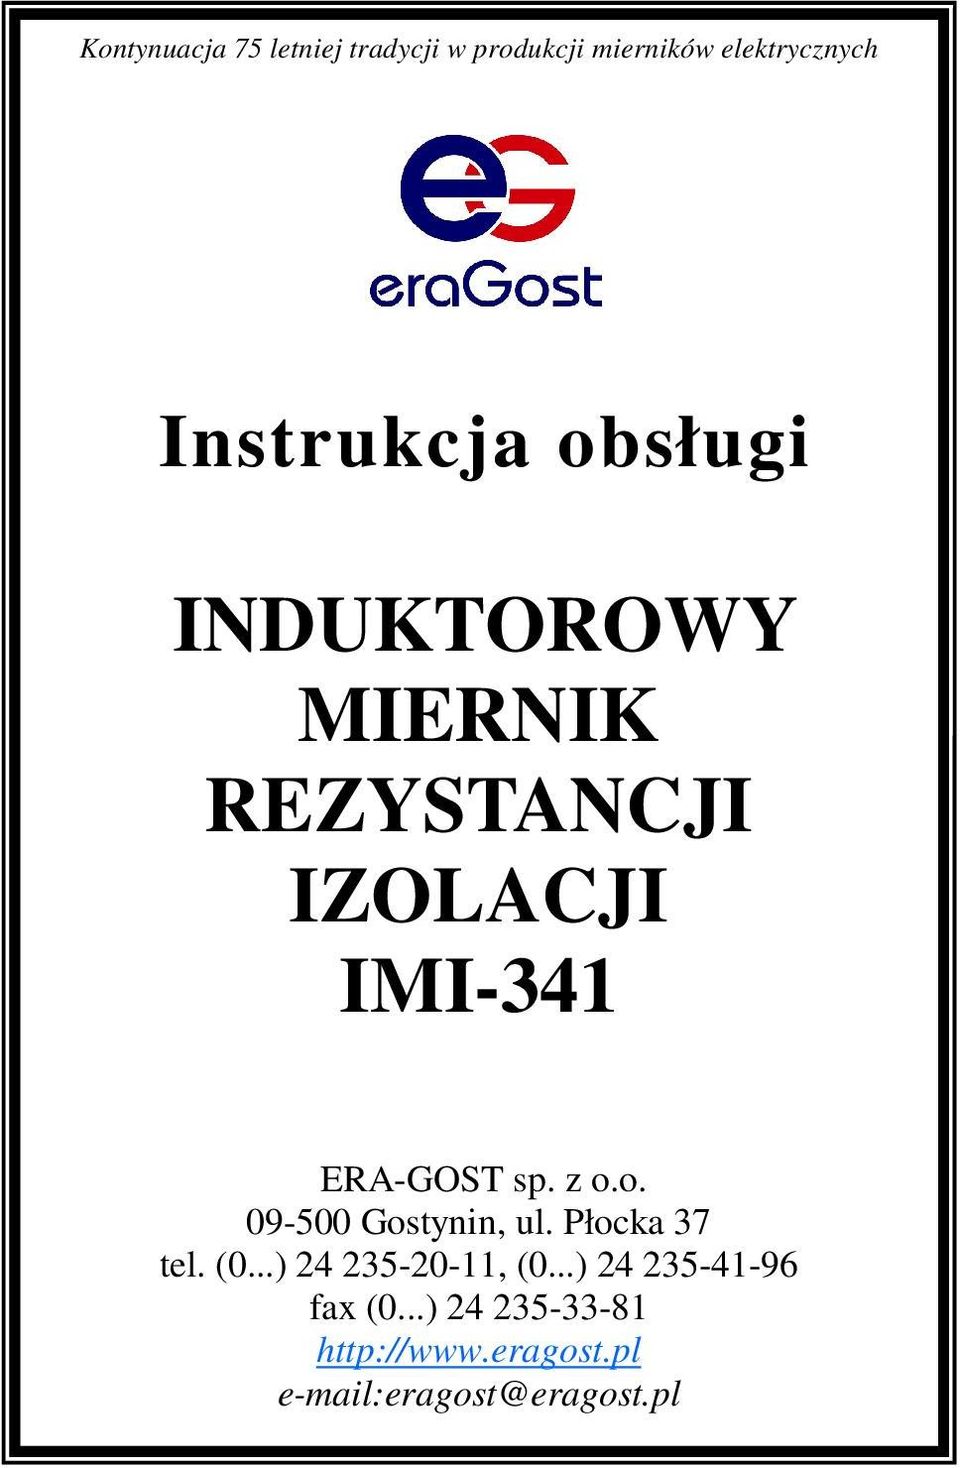 ERA-GOST sp. z o.o. 09-500 Gostynin, ul. Płocka 37 tel. (0.